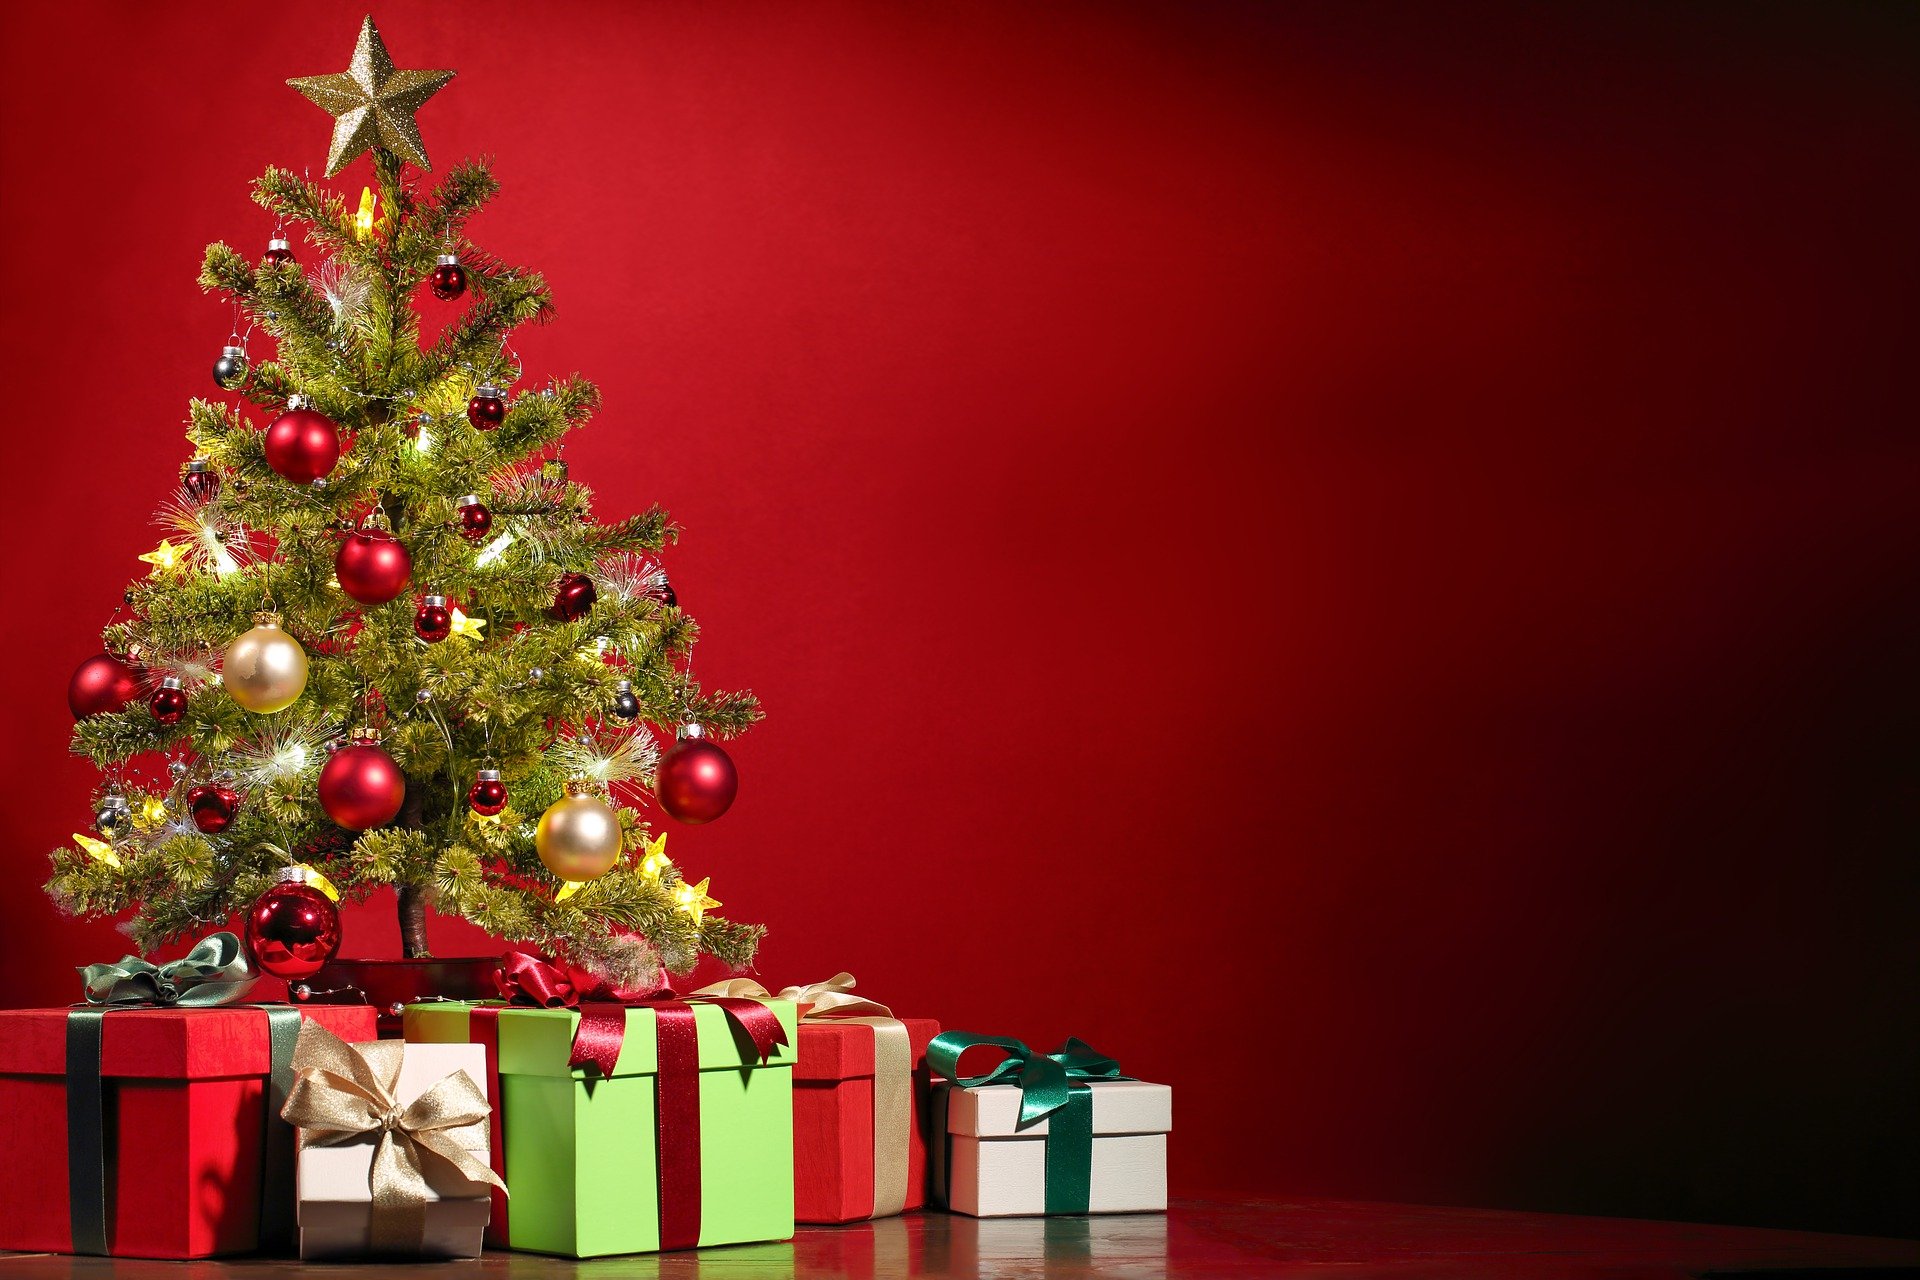 Natale ai tempi del Covid: regali originali in un clic